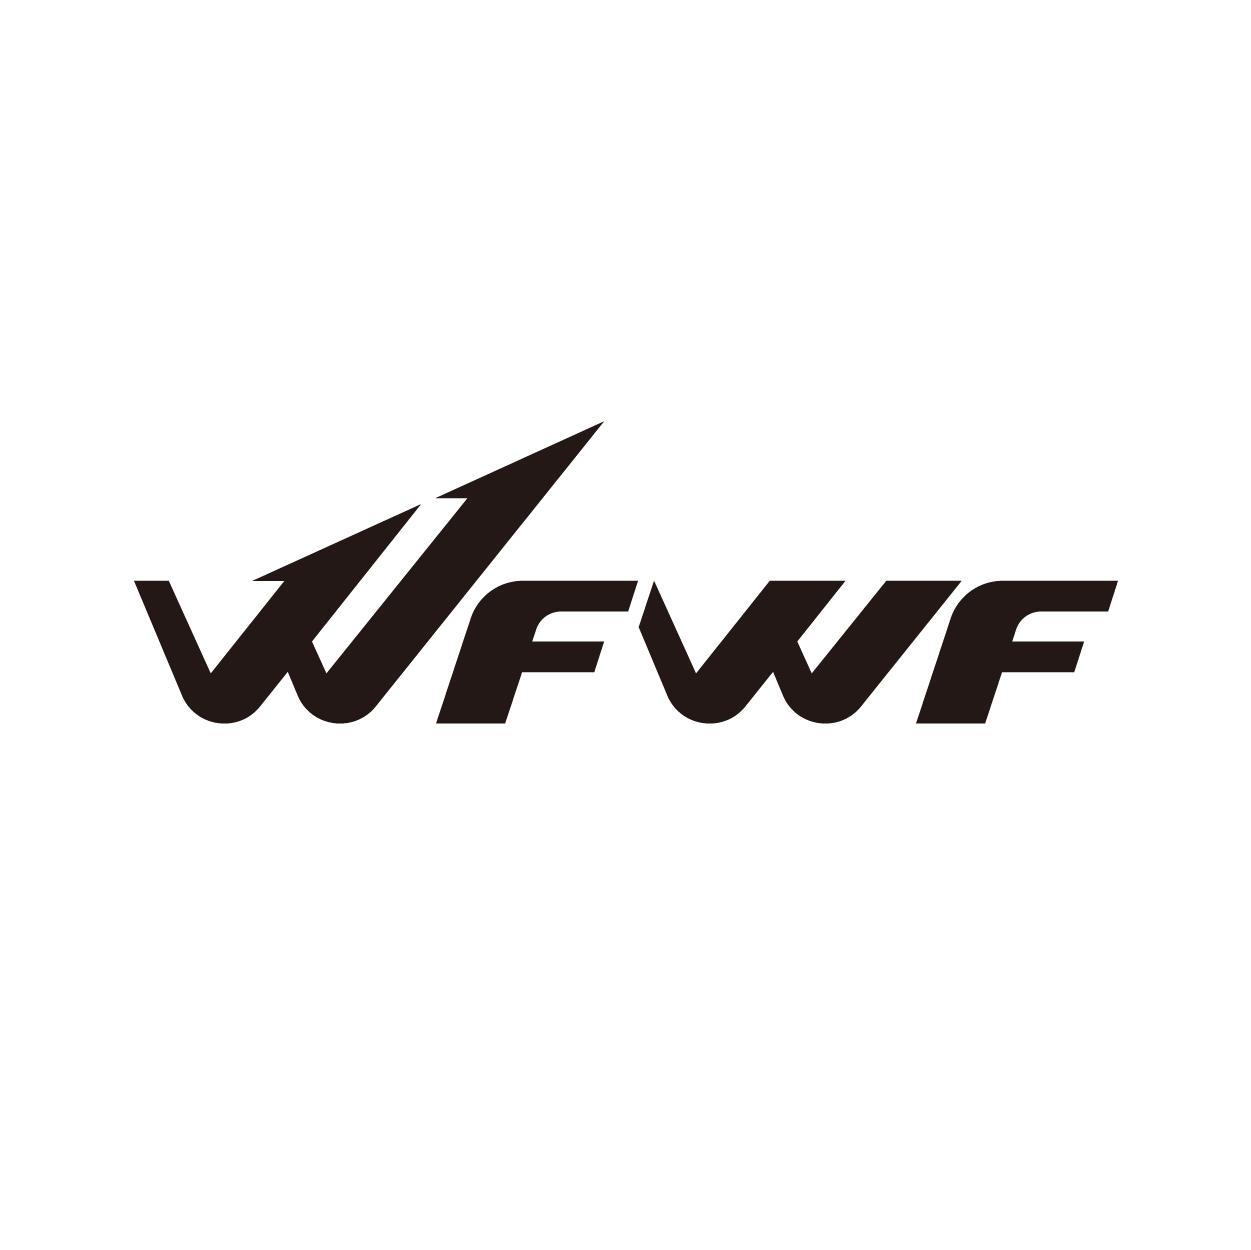 WFWF